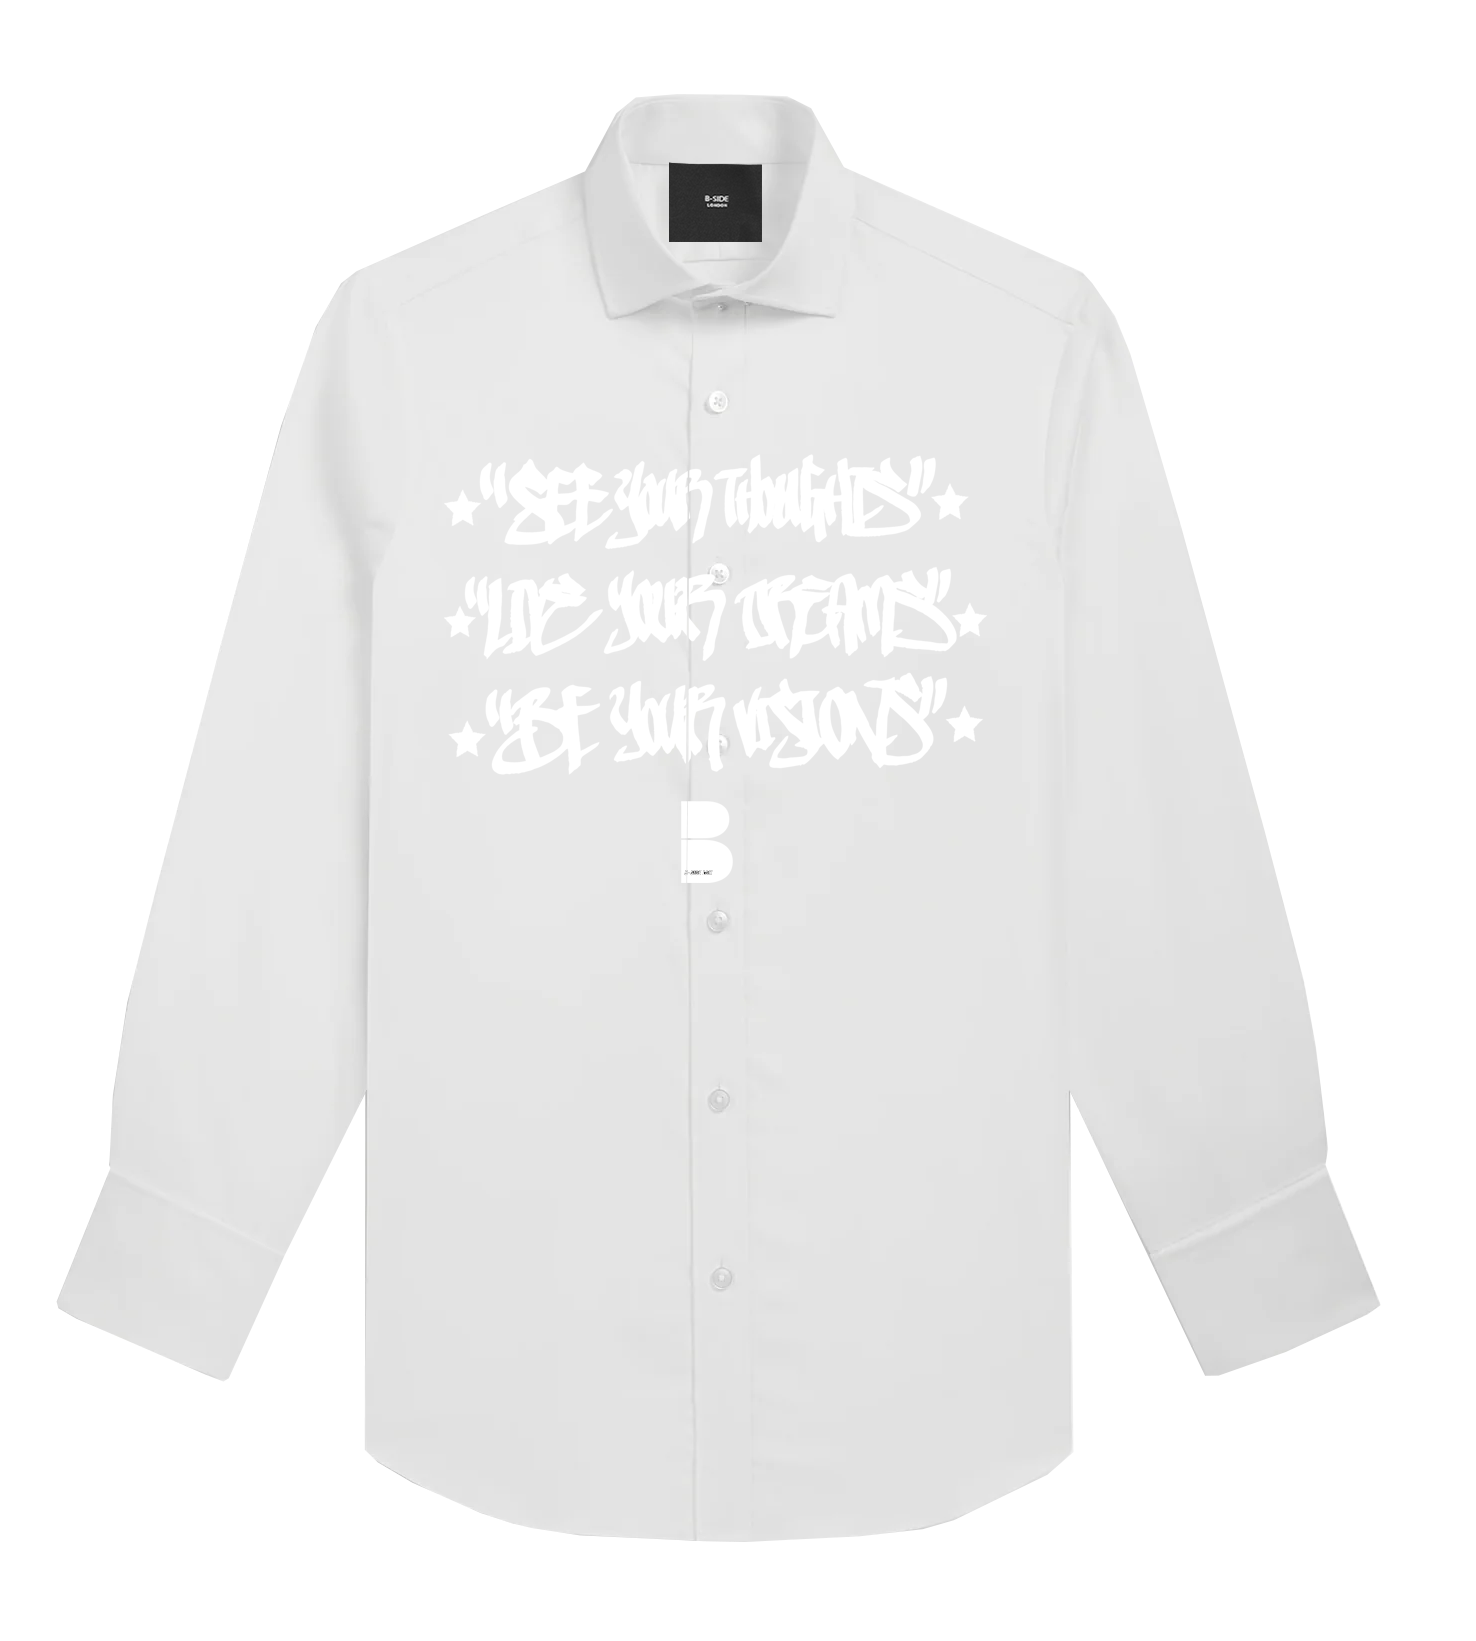 White Second Life Shirt Volume 2 - White Print